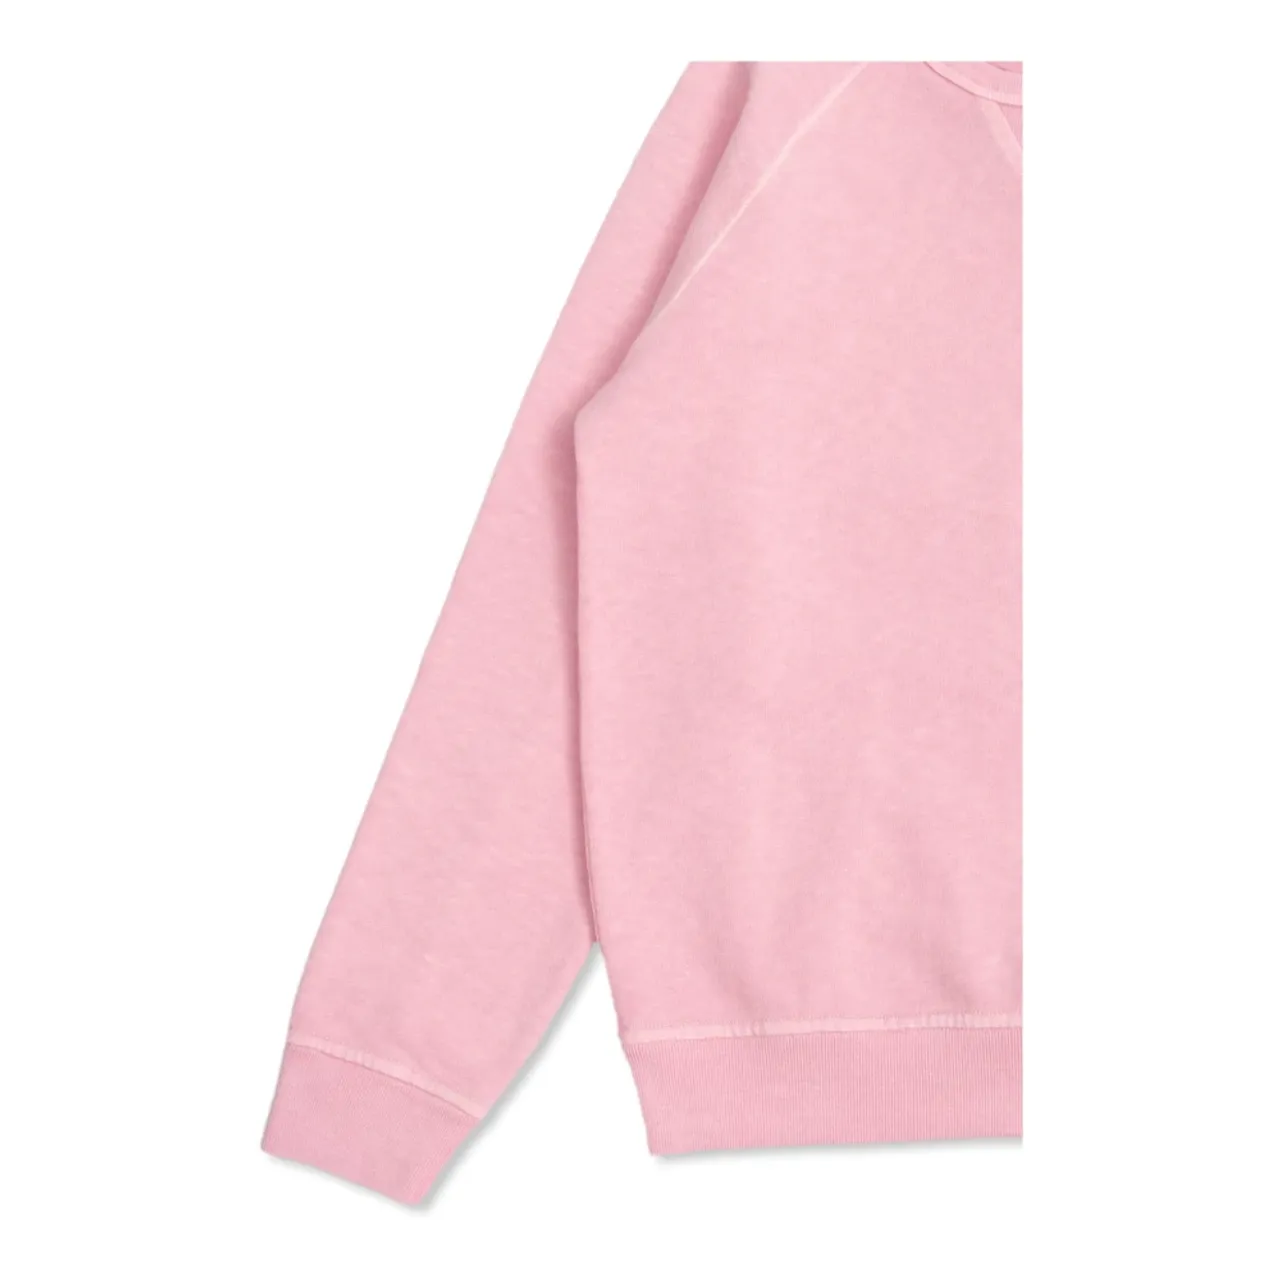 Stone Island , Sweatshirt with logo ,Pink female, Sizes: